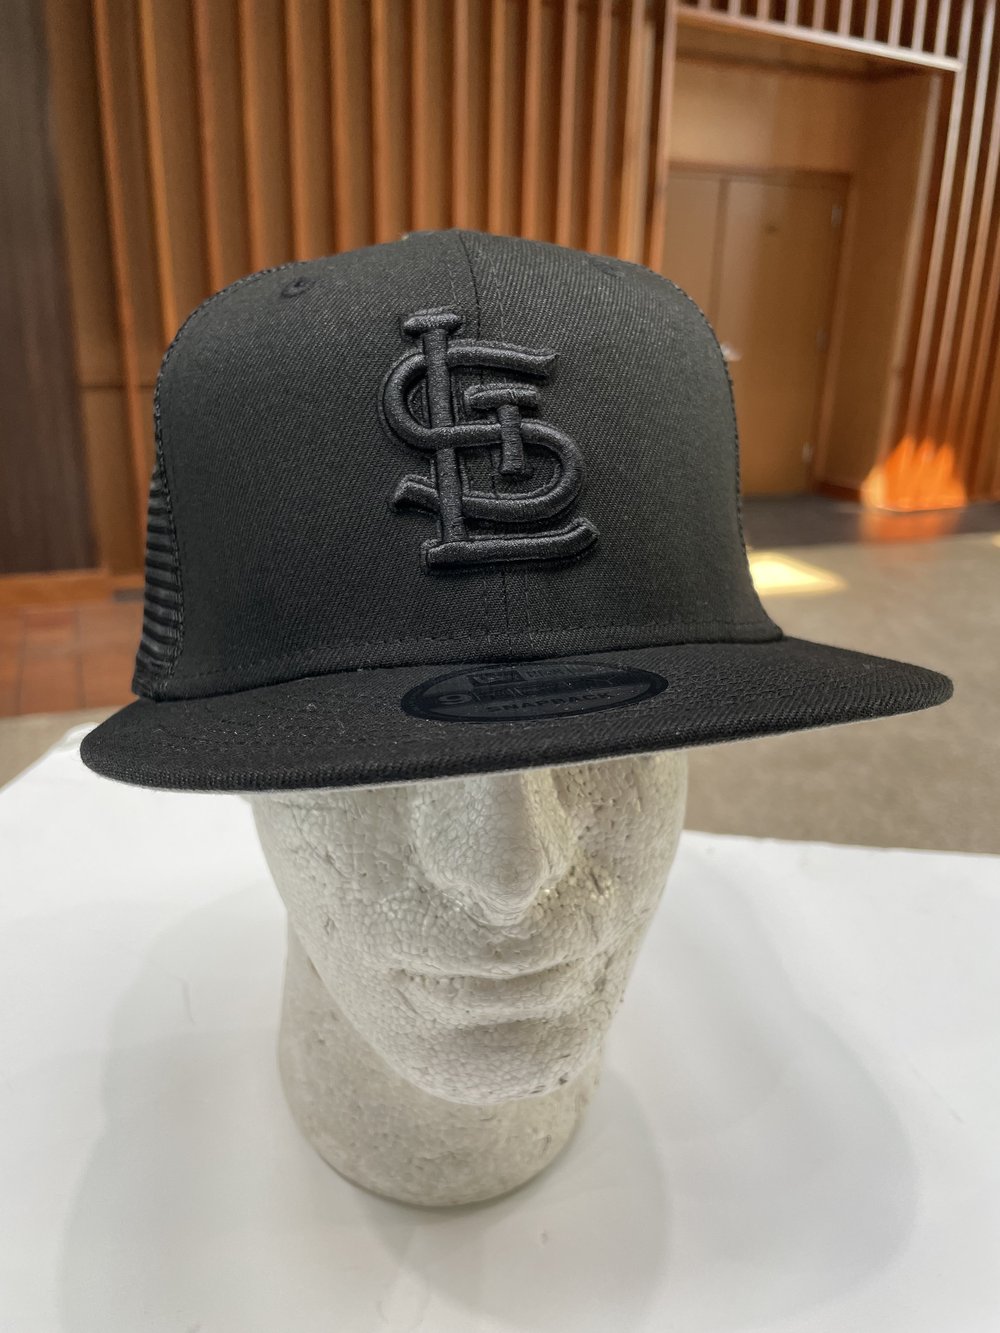 St Louis Cardinals Kids Ball Cap Hat Adjustable Baseball